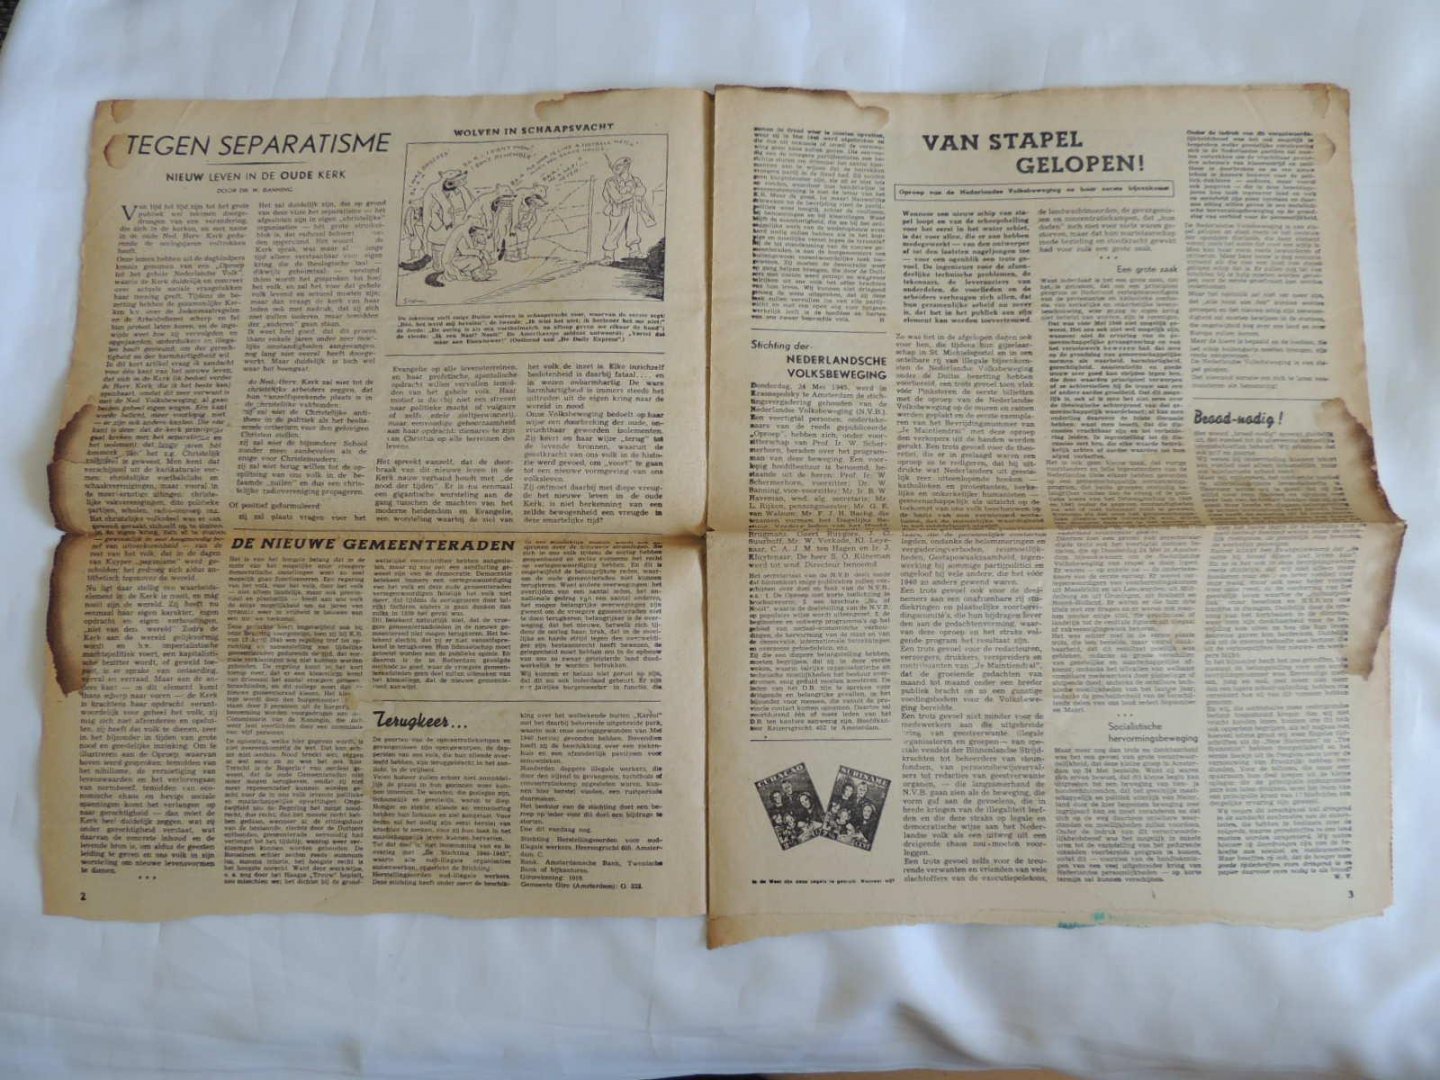 Hoofdredacteur: P.J. SCHMIDT - JE MAINTIENDRAI - Nederland en Oranje - 2 juni 1945 5e jaargang No. 22 (82)